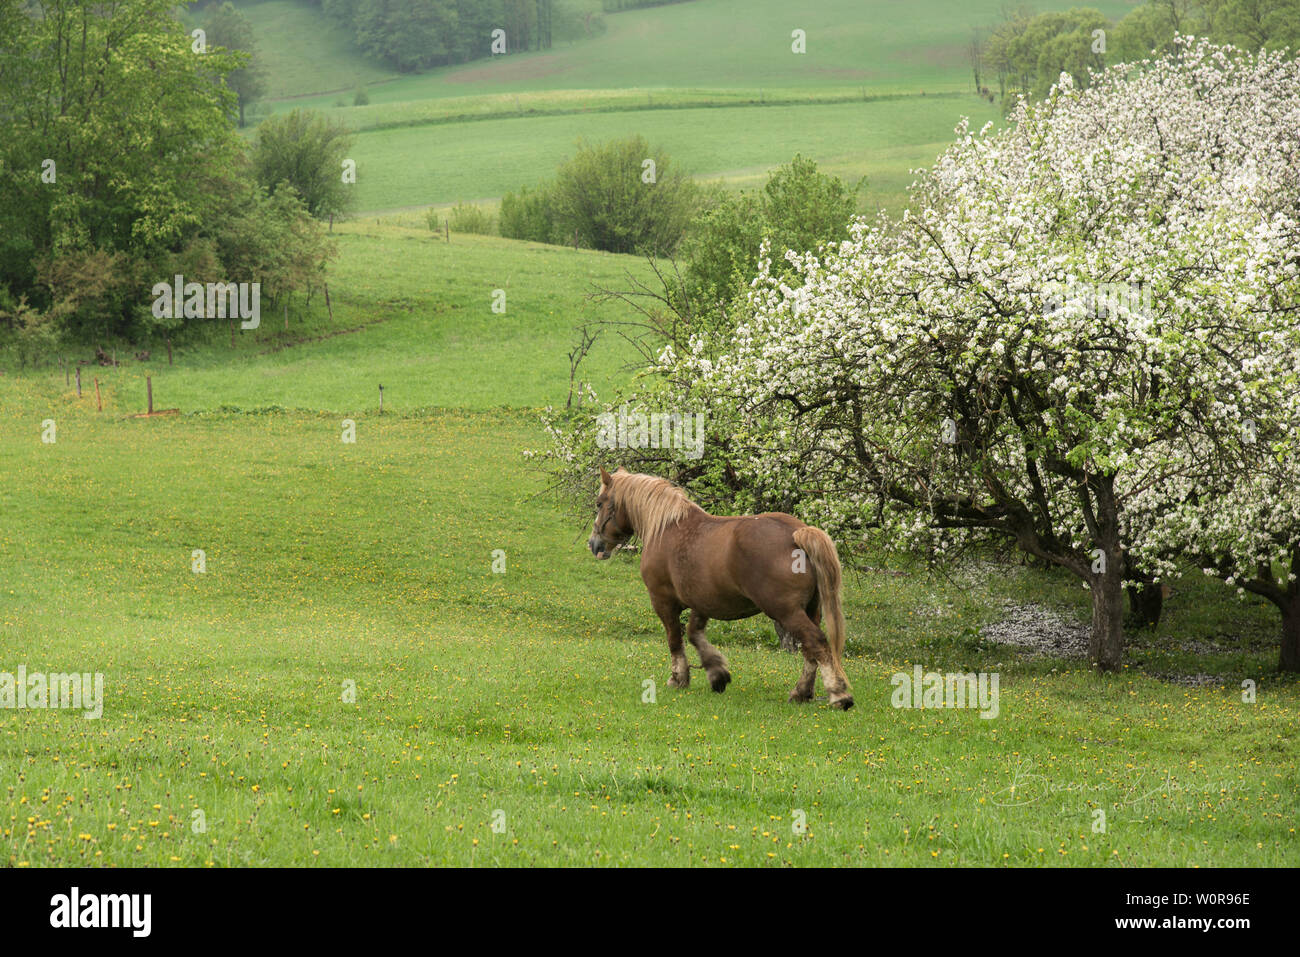 Paesaggio con un cavallo, prati, campi, colline, primavera, alberi da fiore, fiori bianchi, erba verde, cavallo, Polonia, natura, paesaggio rurale, Foto Stock